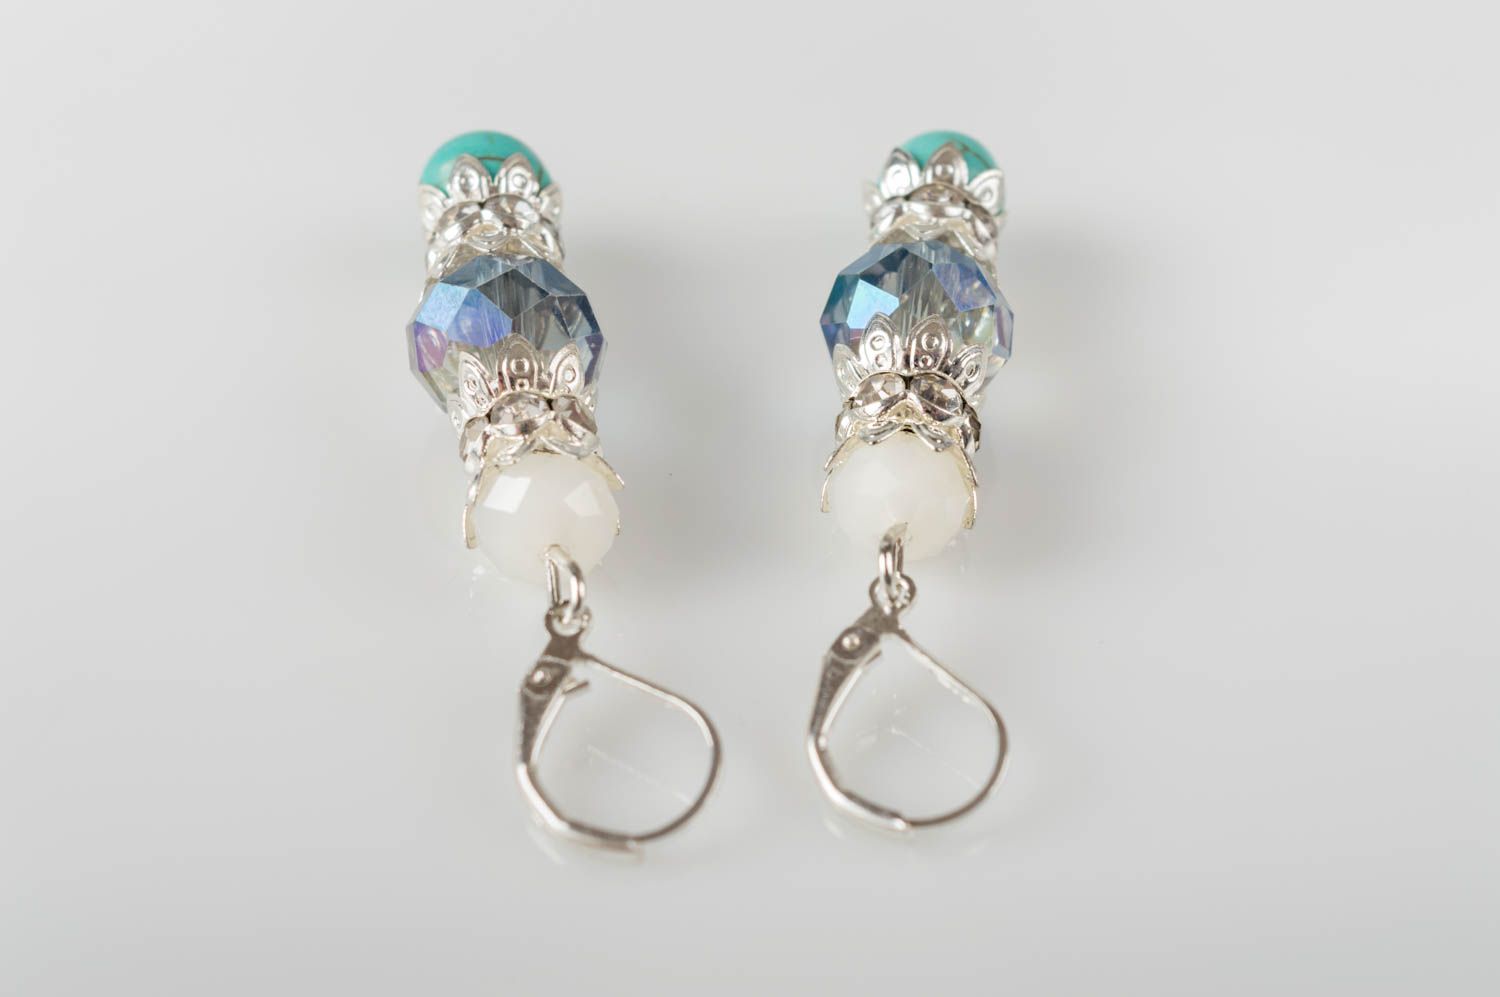 Small handmade gemstone earrings designer crystal earrings gifts for her photo 3